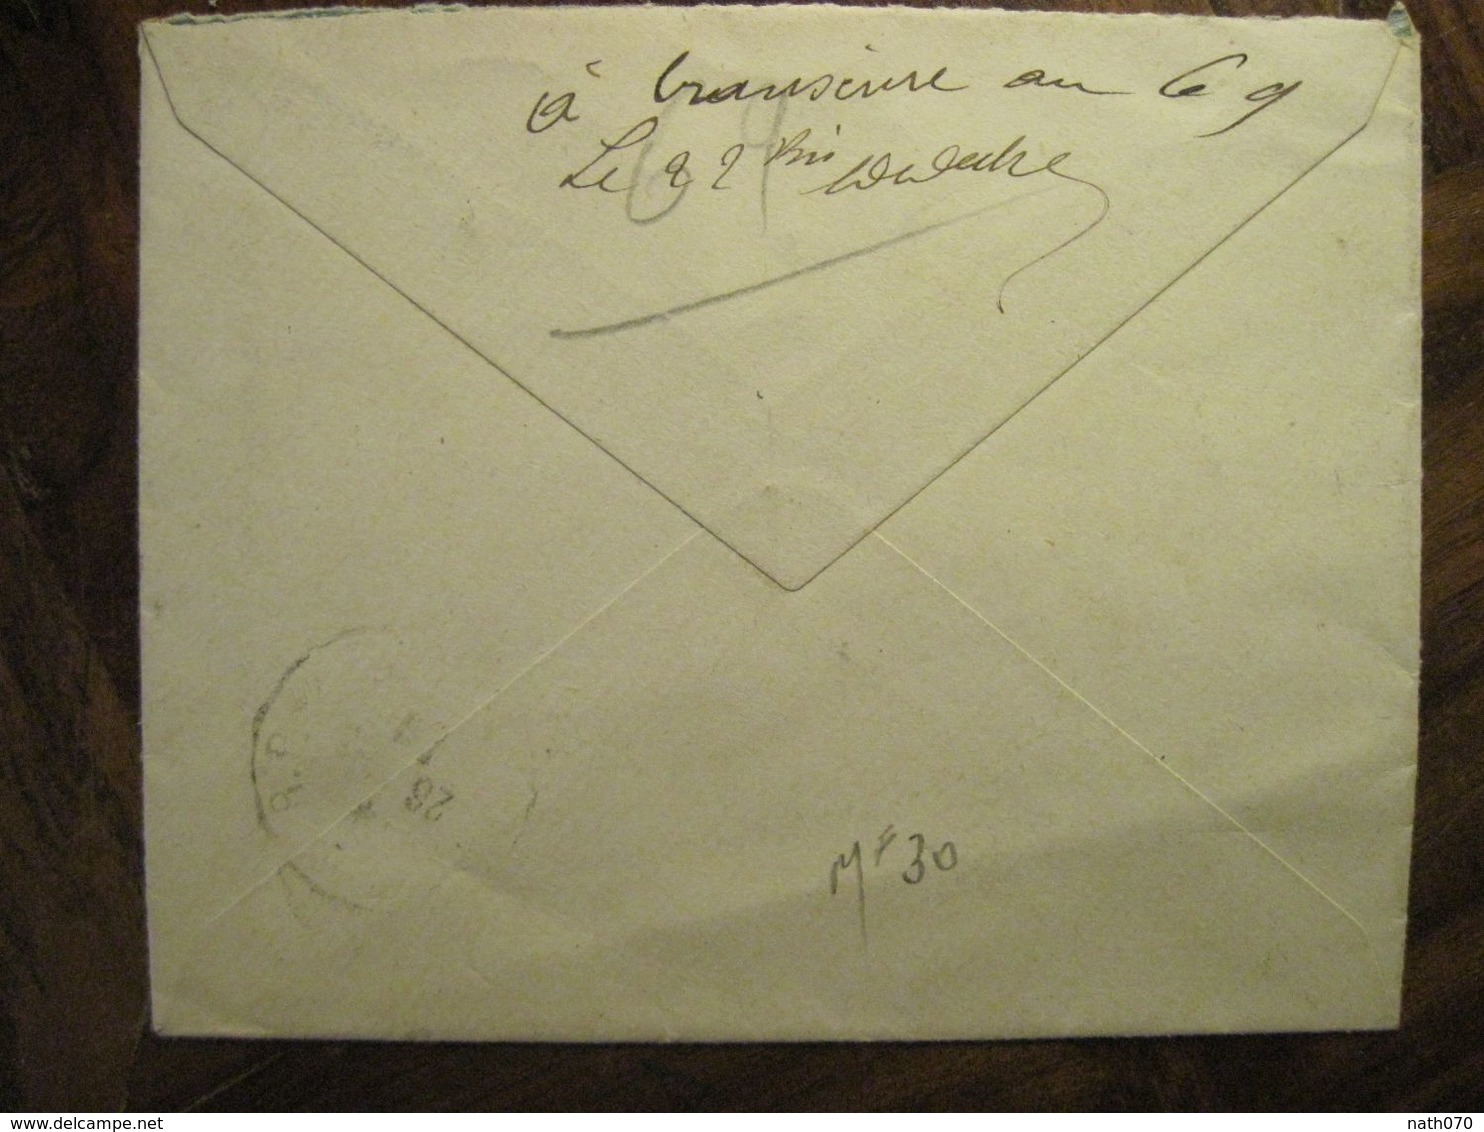 Cote D'Ivoire 1920 France Grand Bassam Lettre Enveloppe Cover Colonie Recommandé Reco AOF Taffin Lefort - Briefe U. Dokumente